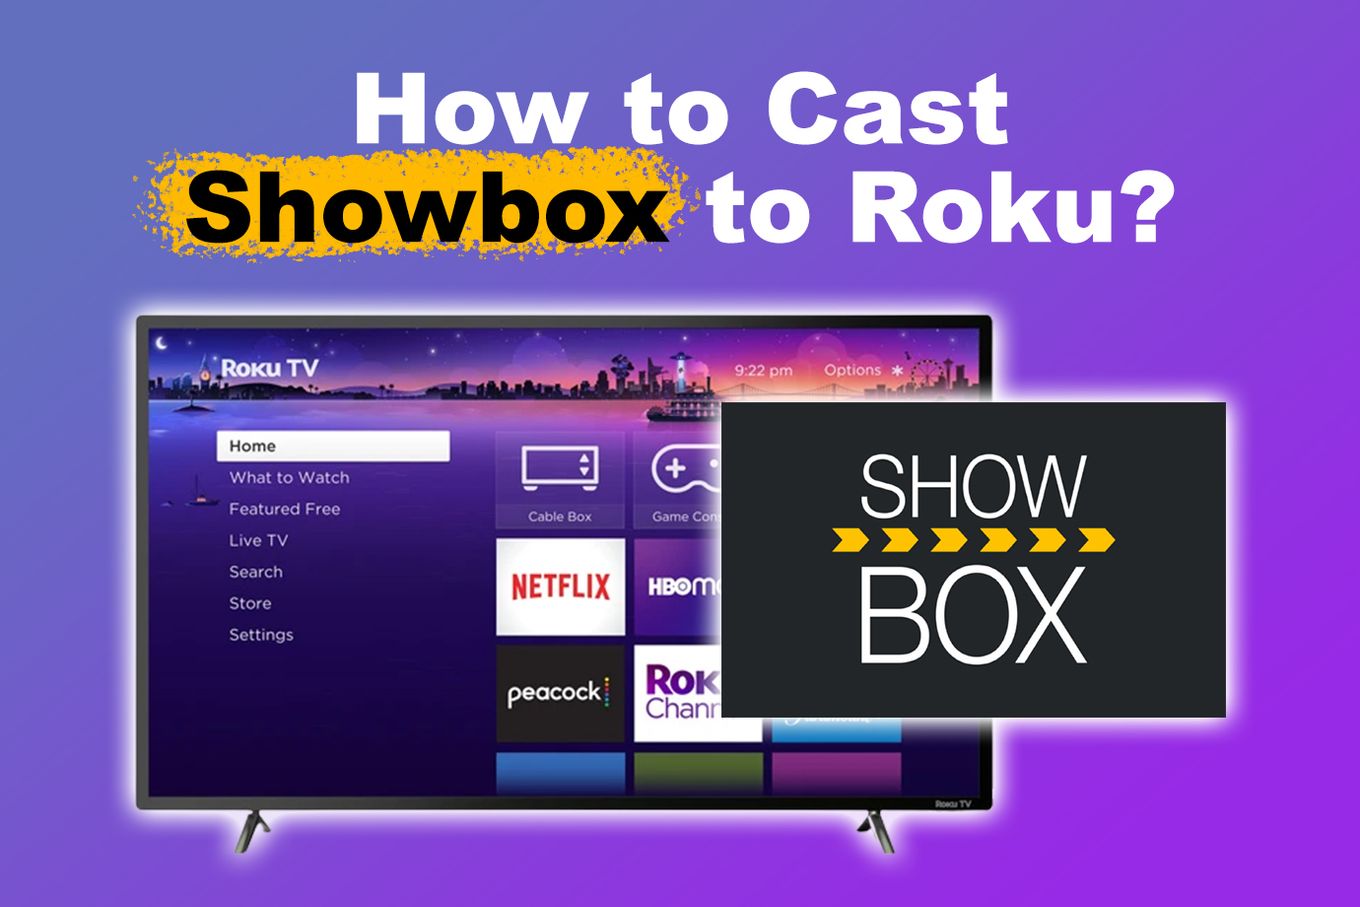 How to Cast Showbox to Roku